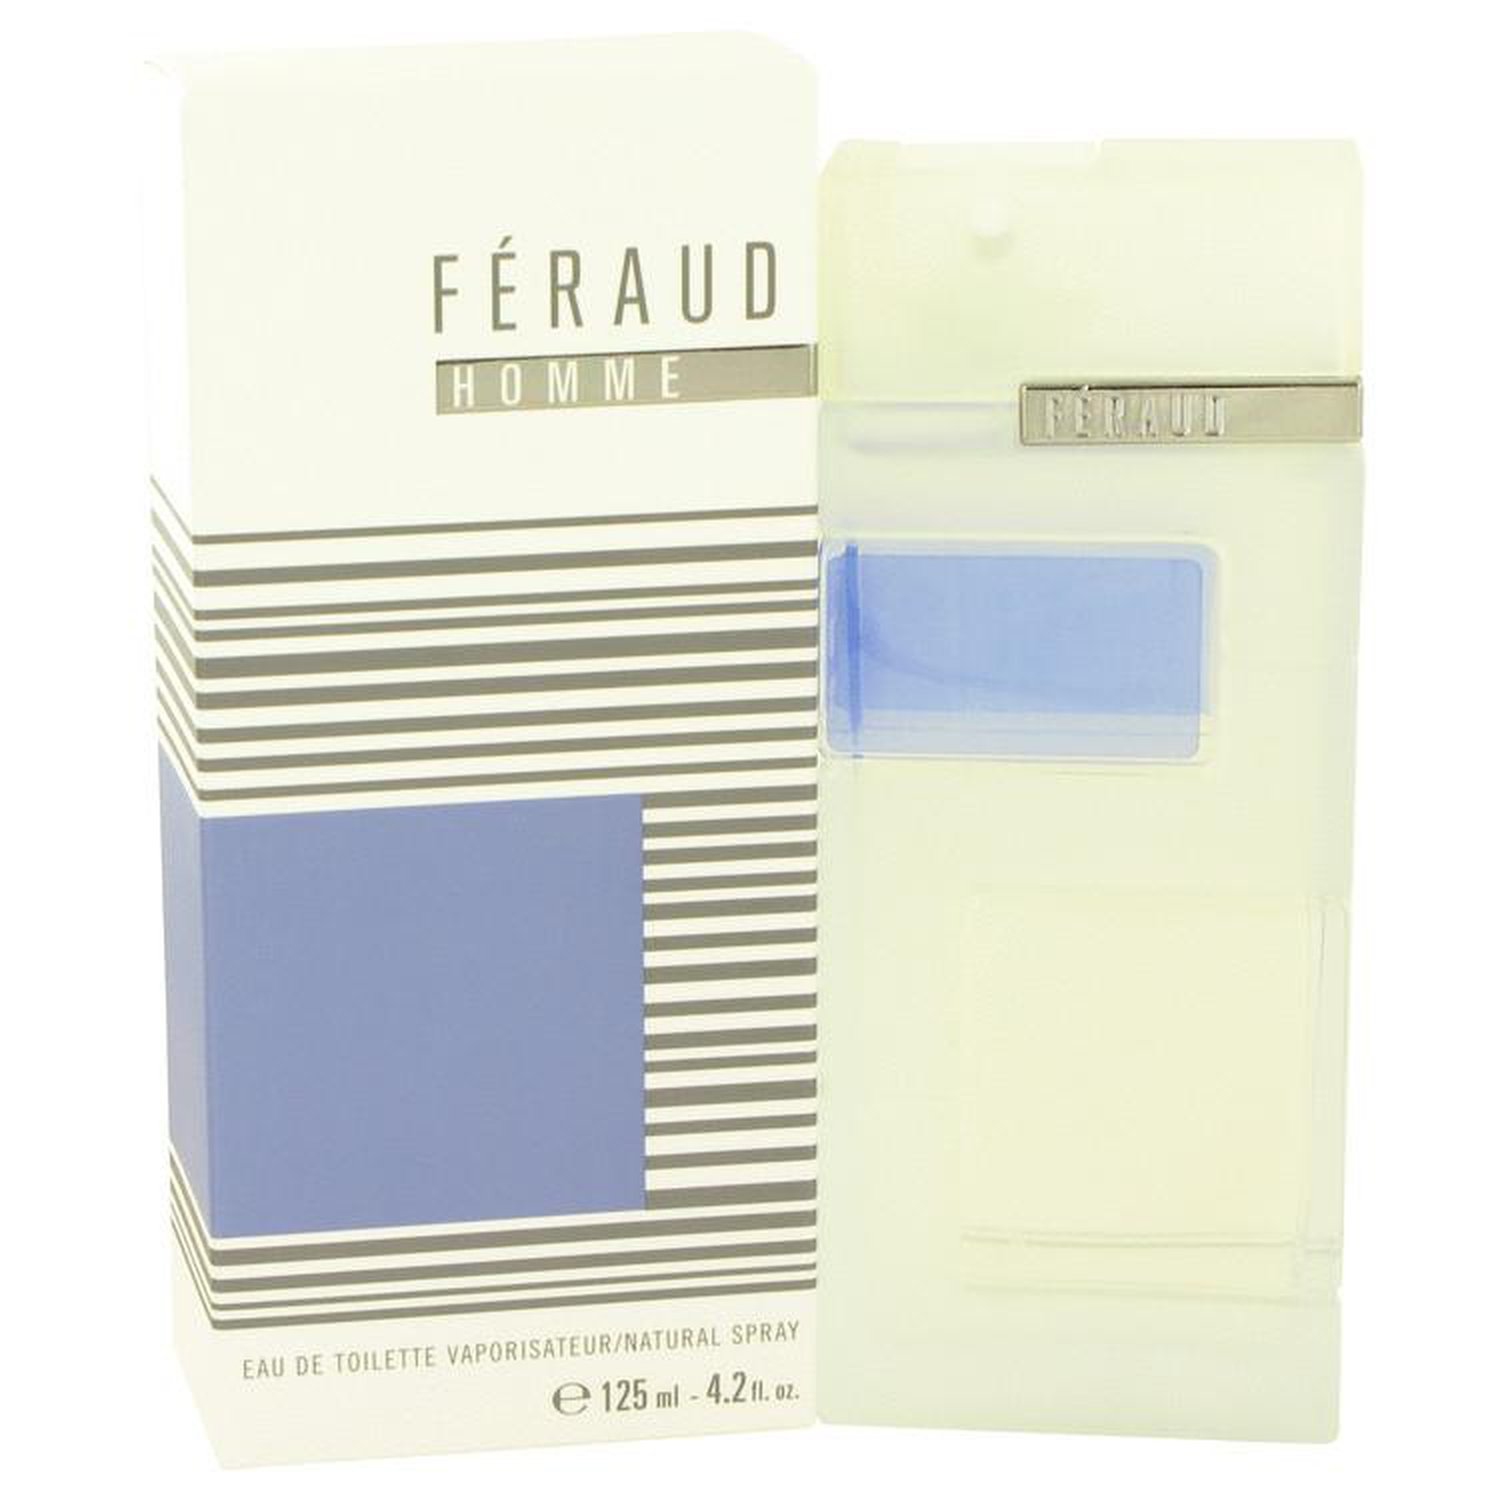  Feraud Homme by Louis Feraud for Men. Eau De Toilette Spray  4.2-Ounce : Cologne : Beauty & Personal Care